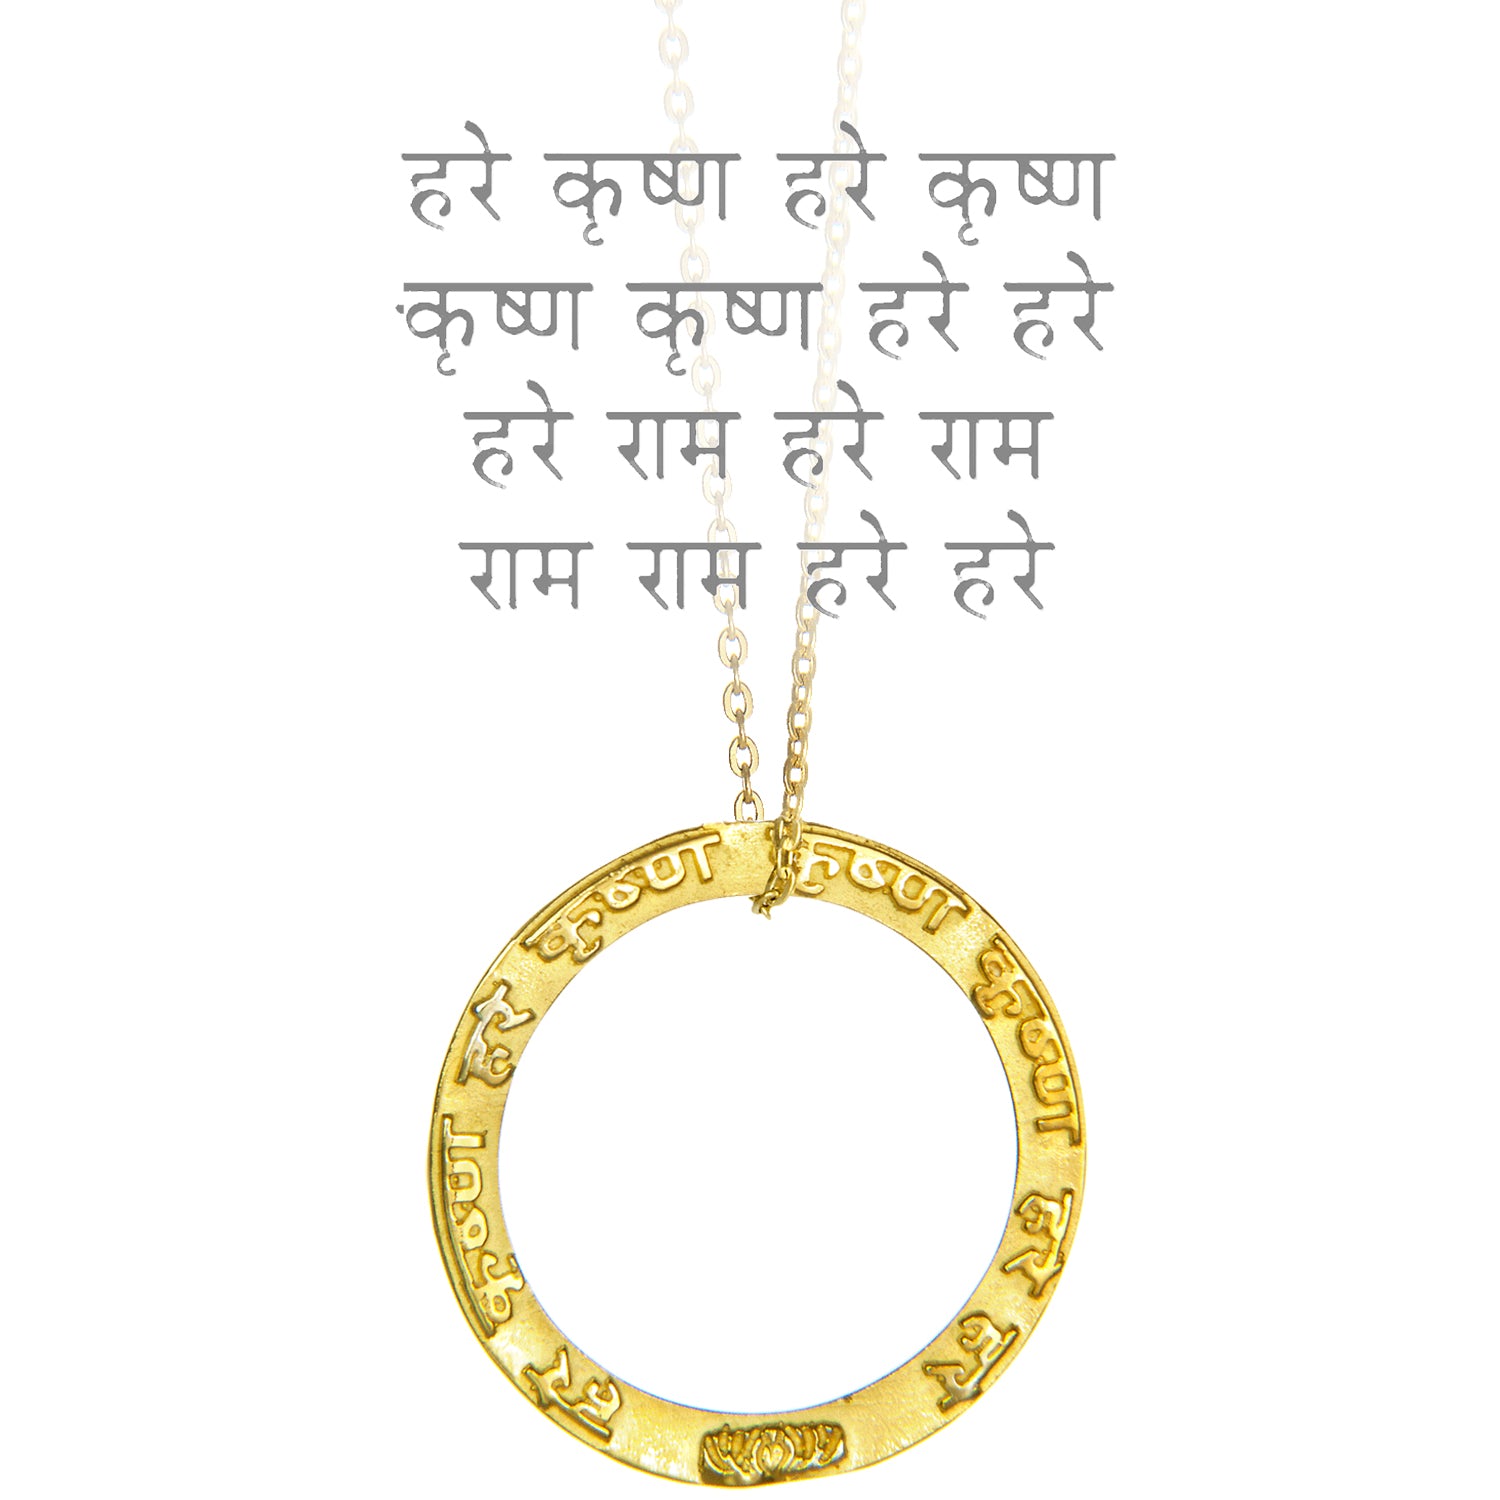 Krishna Mantra anhänger aus 24kt vergoldetem Sterling Silber mit hochwertiger Goldkette von ETERNAL BLISS